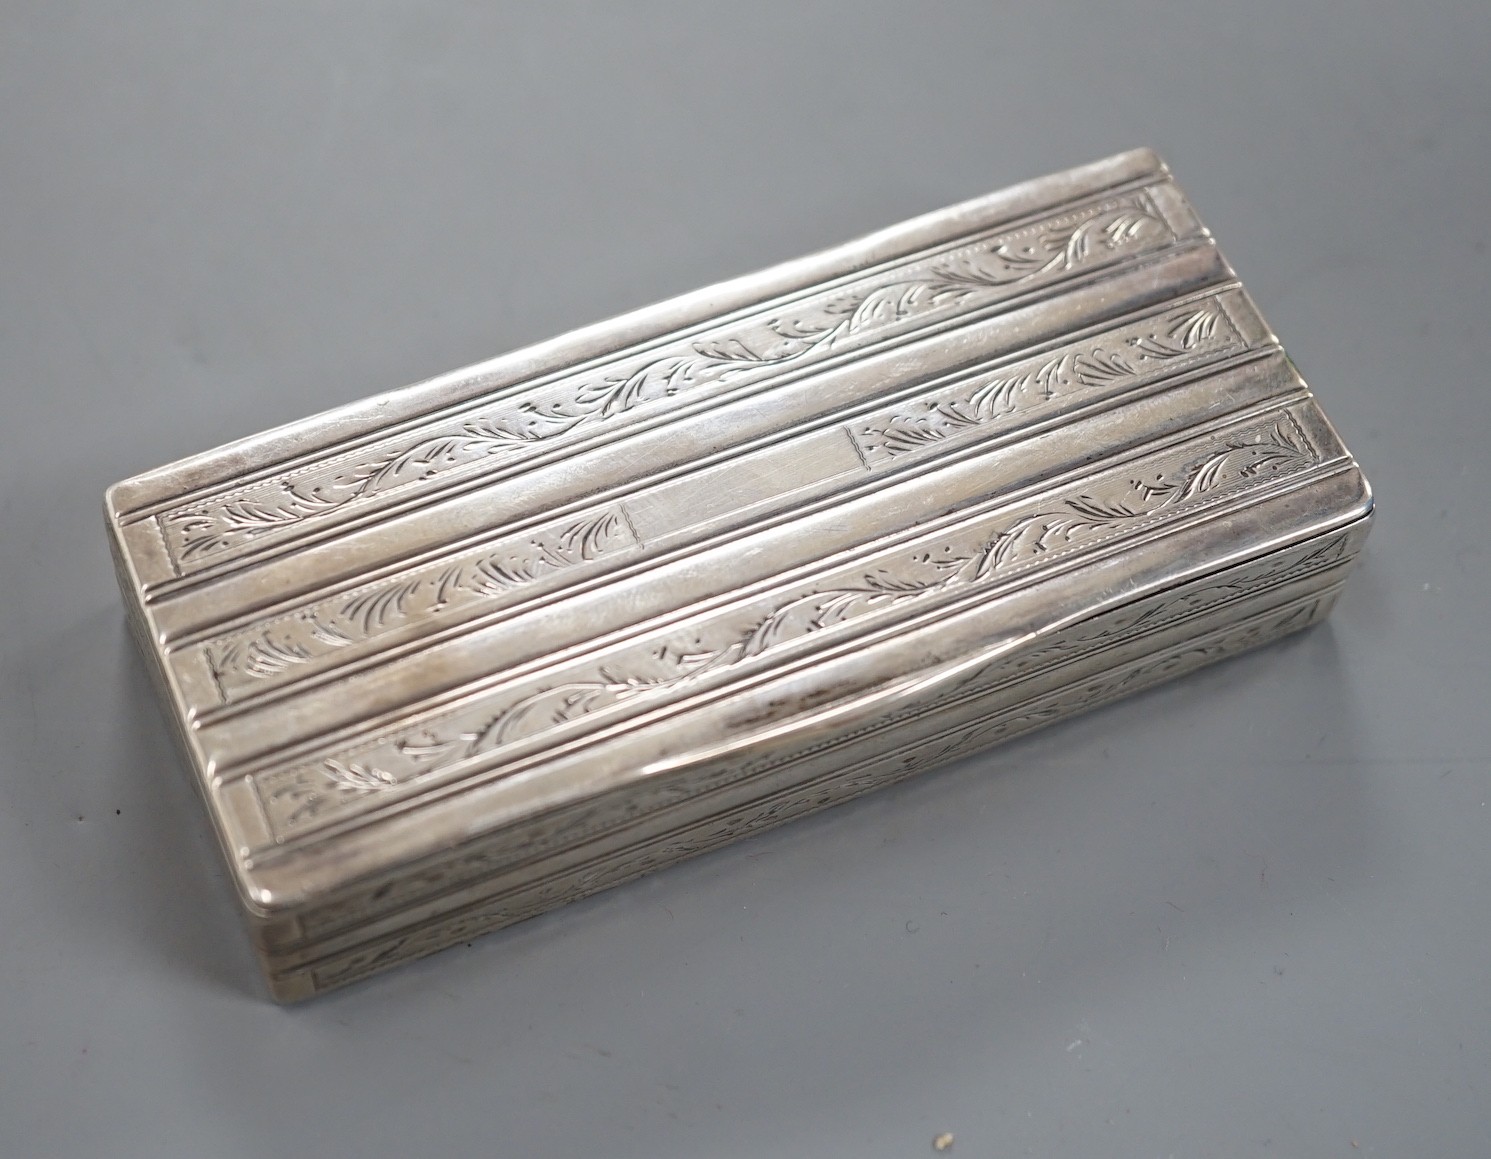 A mid 19th century Portuguese white metal rectangular snuff box, Oporto 1843-1853 mark, 87mm, 83 grams.